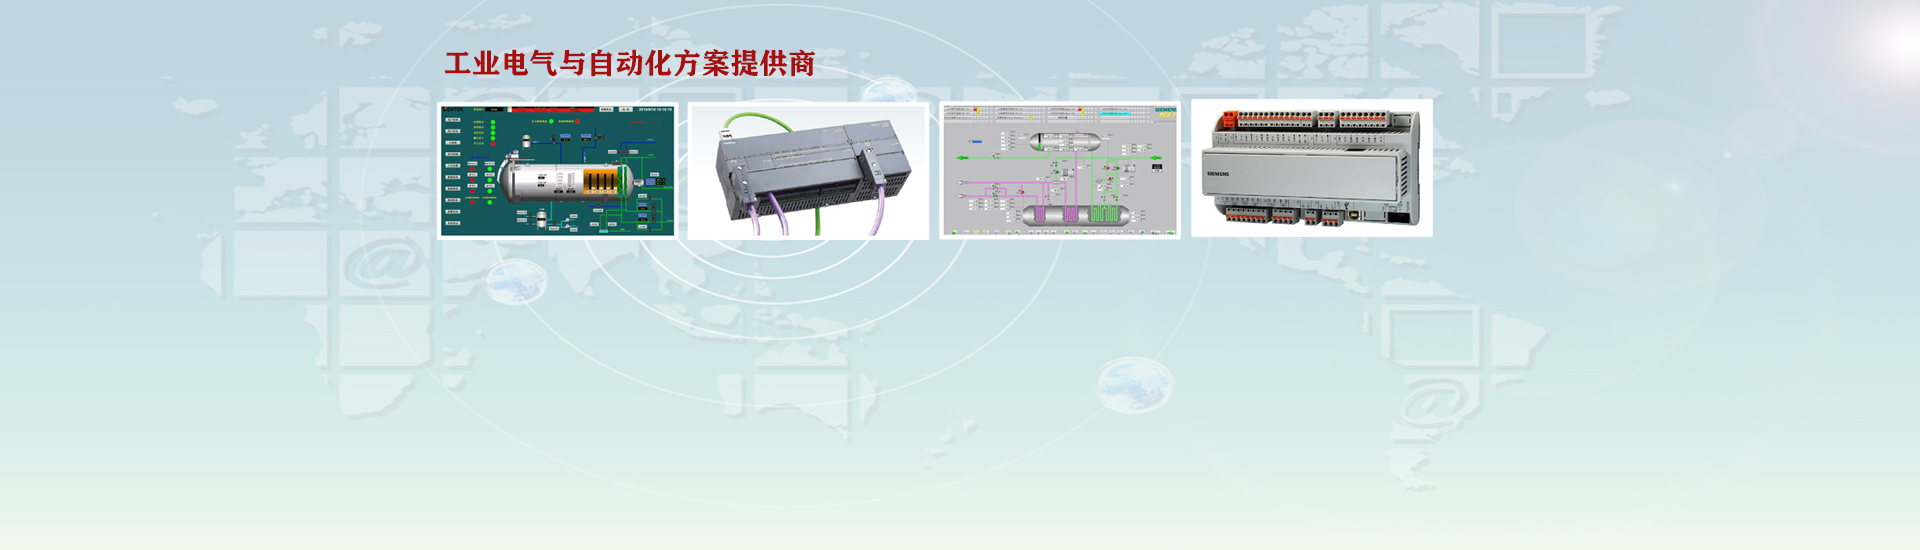 PLC控制柜-电气控制柜-变频控制柜厂家-西安亚业智能科技